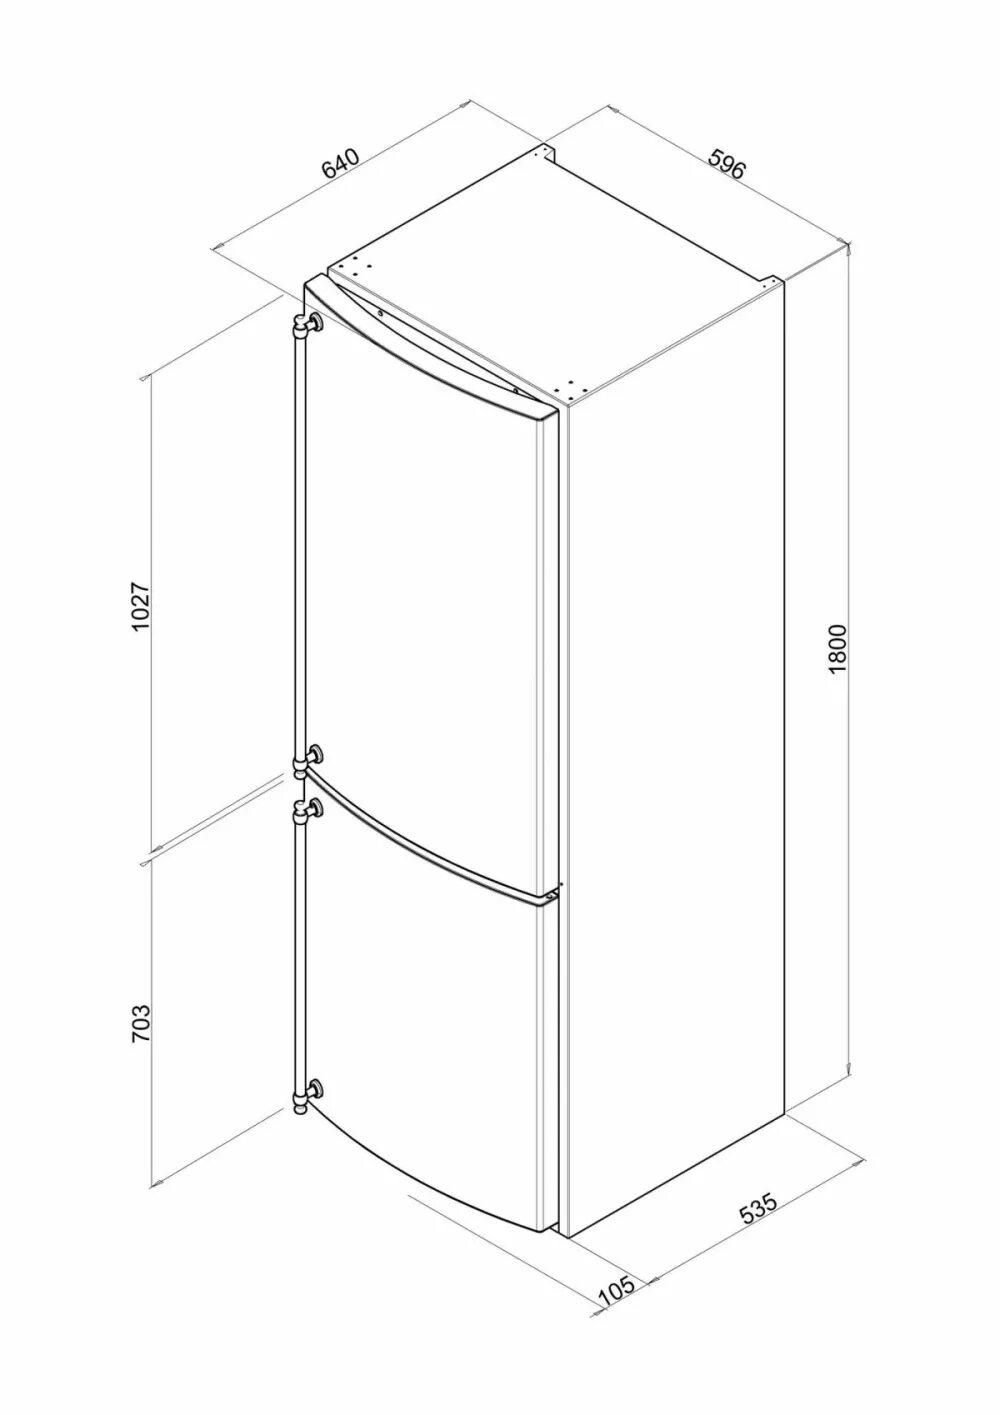 Холодильники Smeg fa860p. Холодильник Smeg fa 860 PS. Высота холодильника стандартная двухкамерного LG. Ширина холодильника стандартная Бирюса. Холодильник индезит размеры